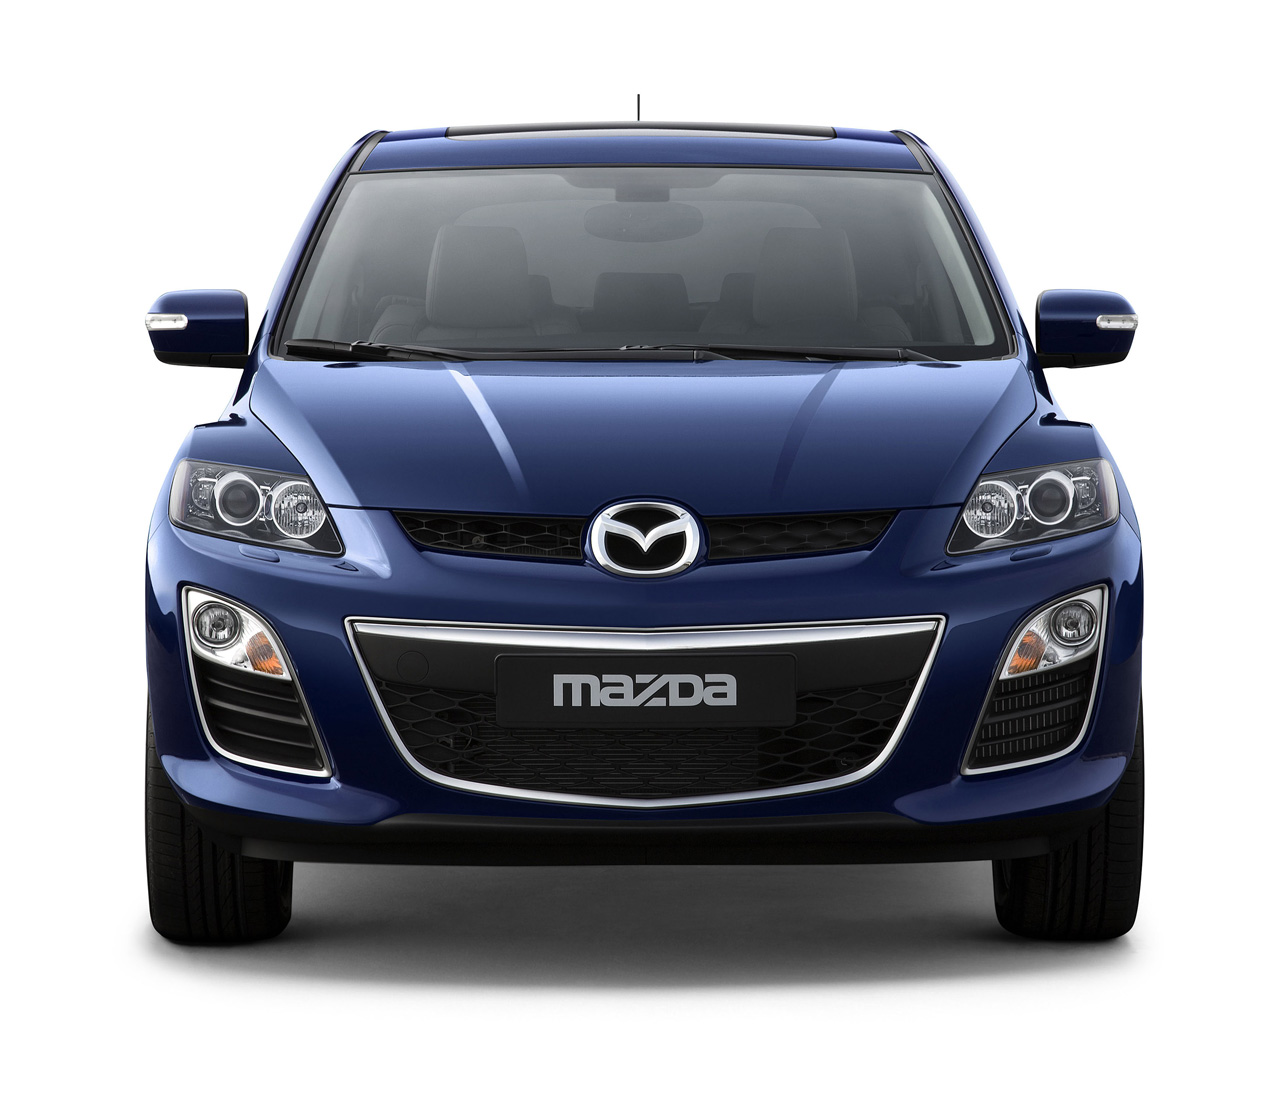 2010 Mazda CX-7 Facelift